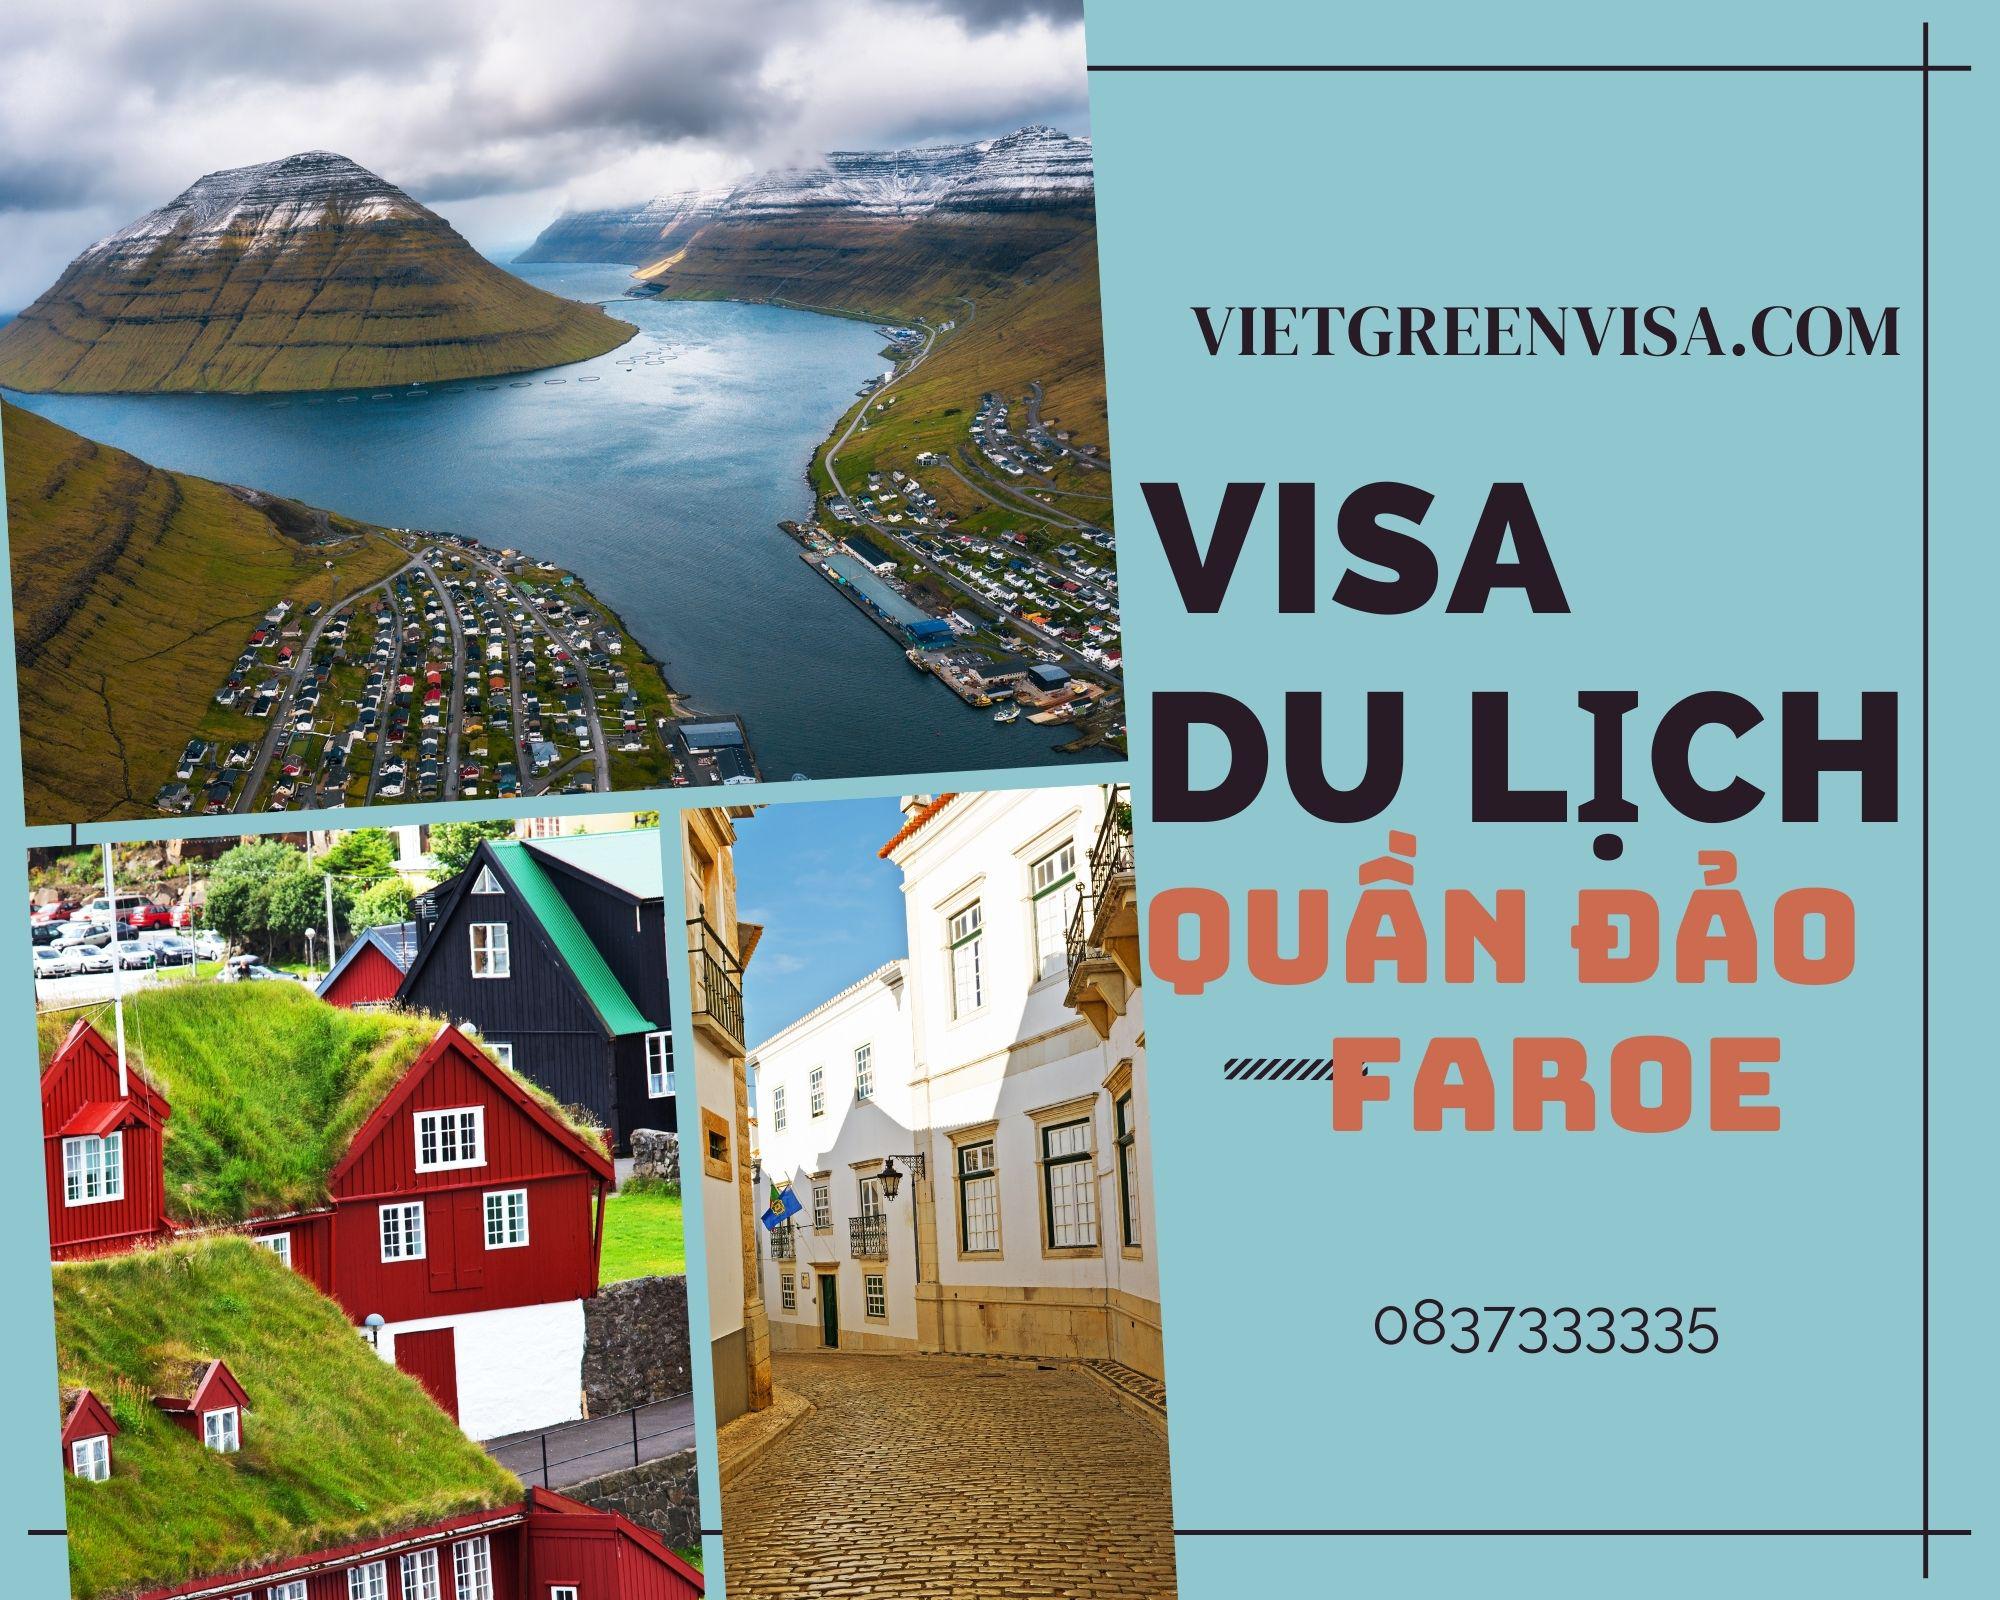 Dịch vụ xin visa du lịch Faroe trọn gói uy tín